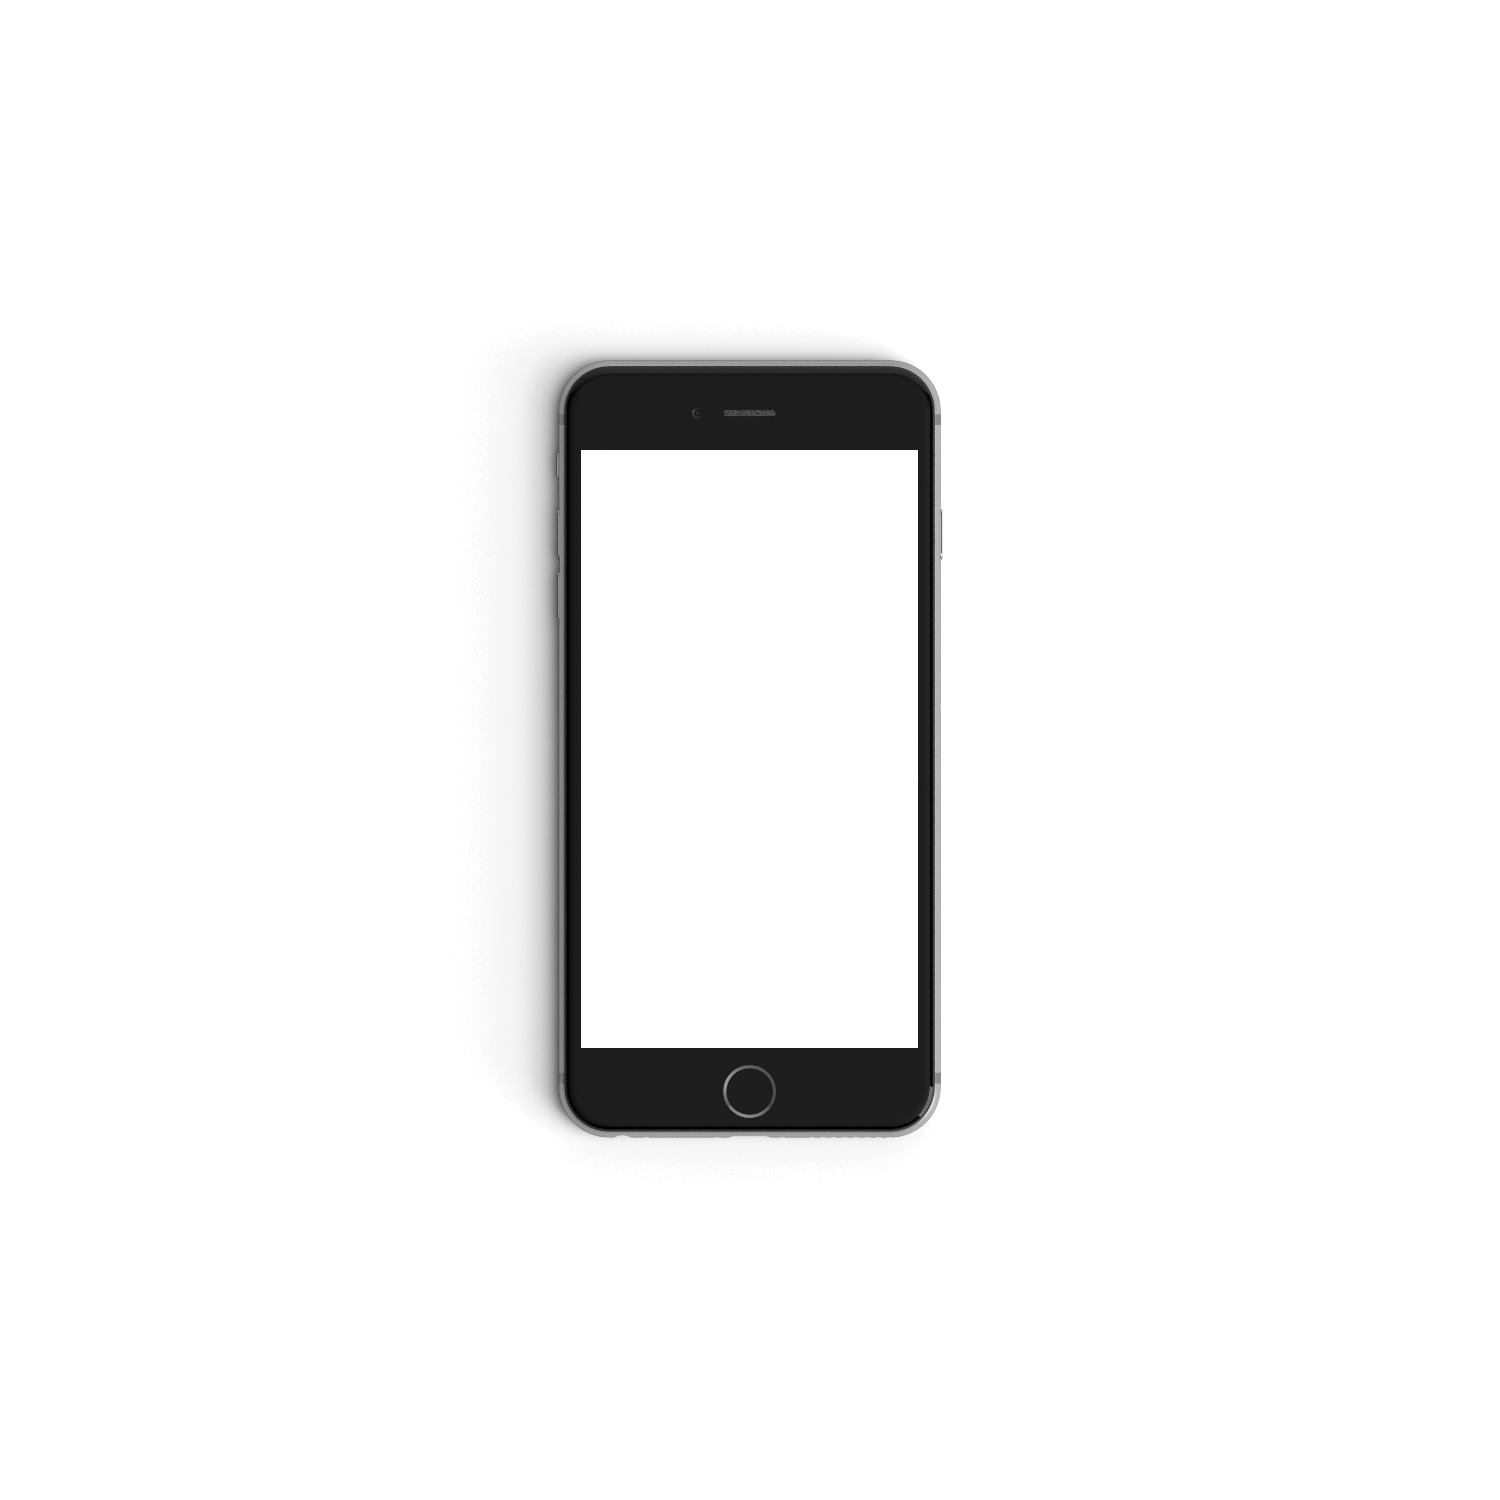 Black iphone displaying white screen